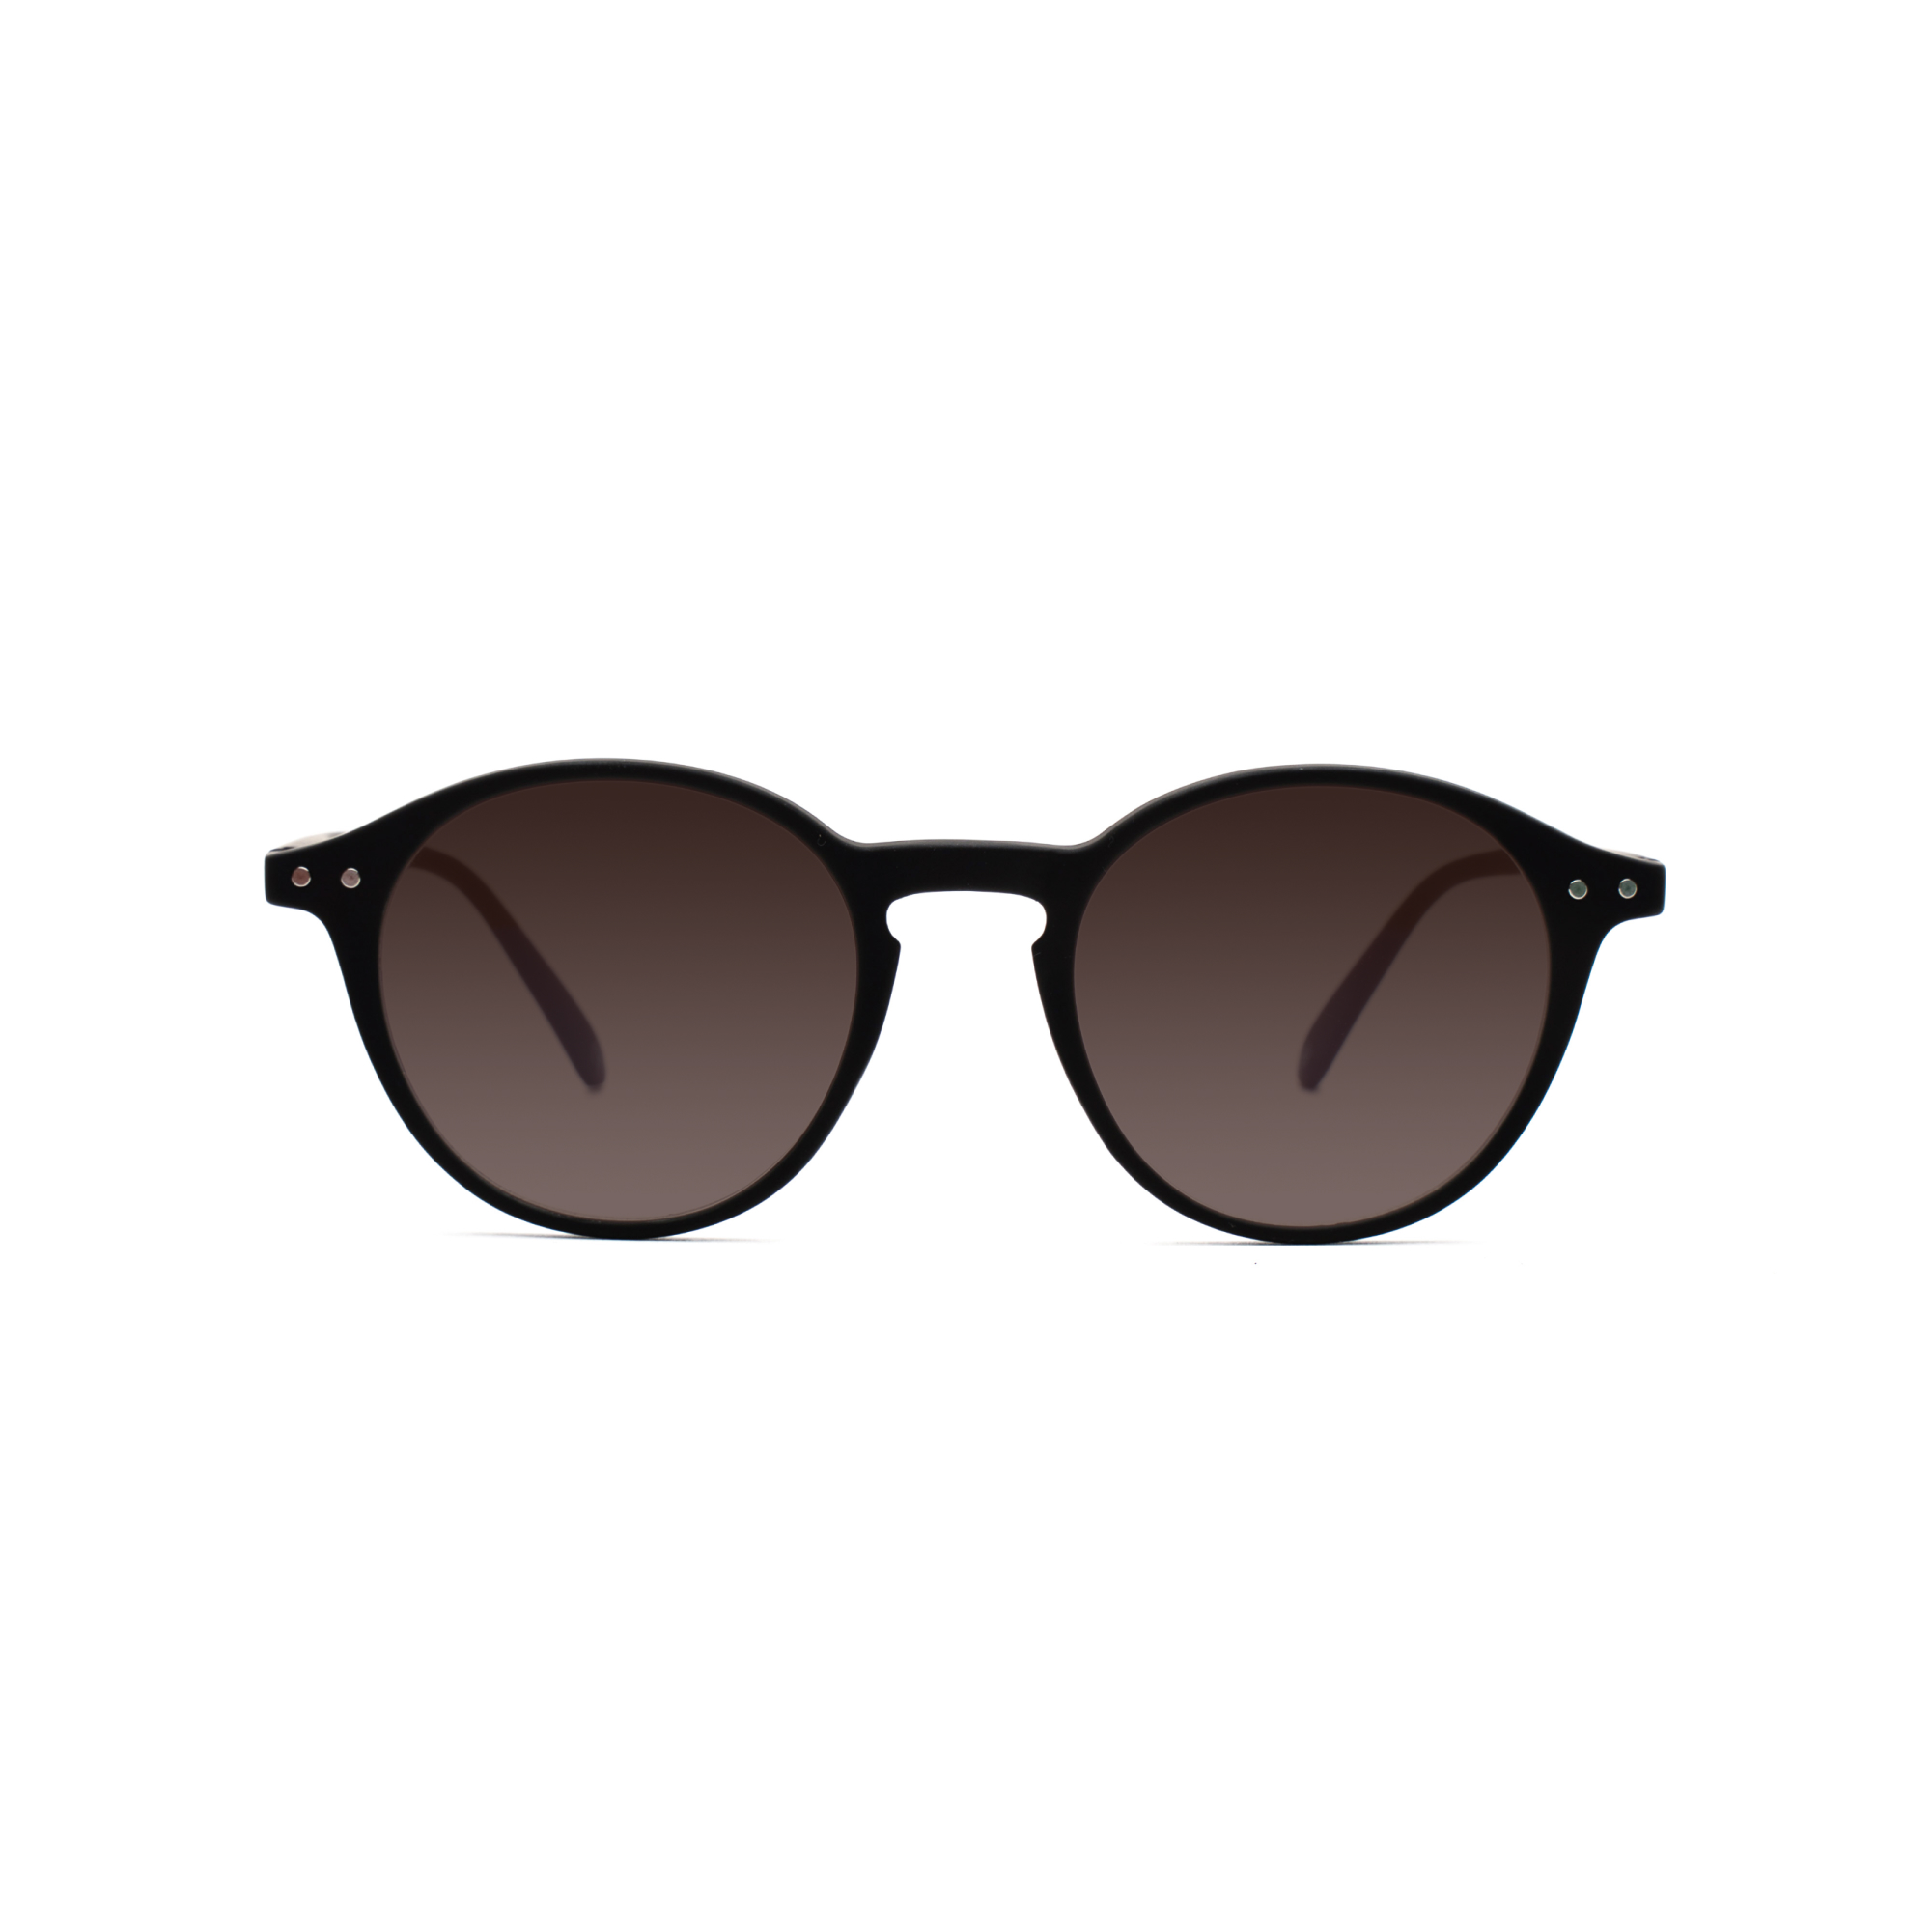 men's sunglasses – Luca UVSUN m - Black